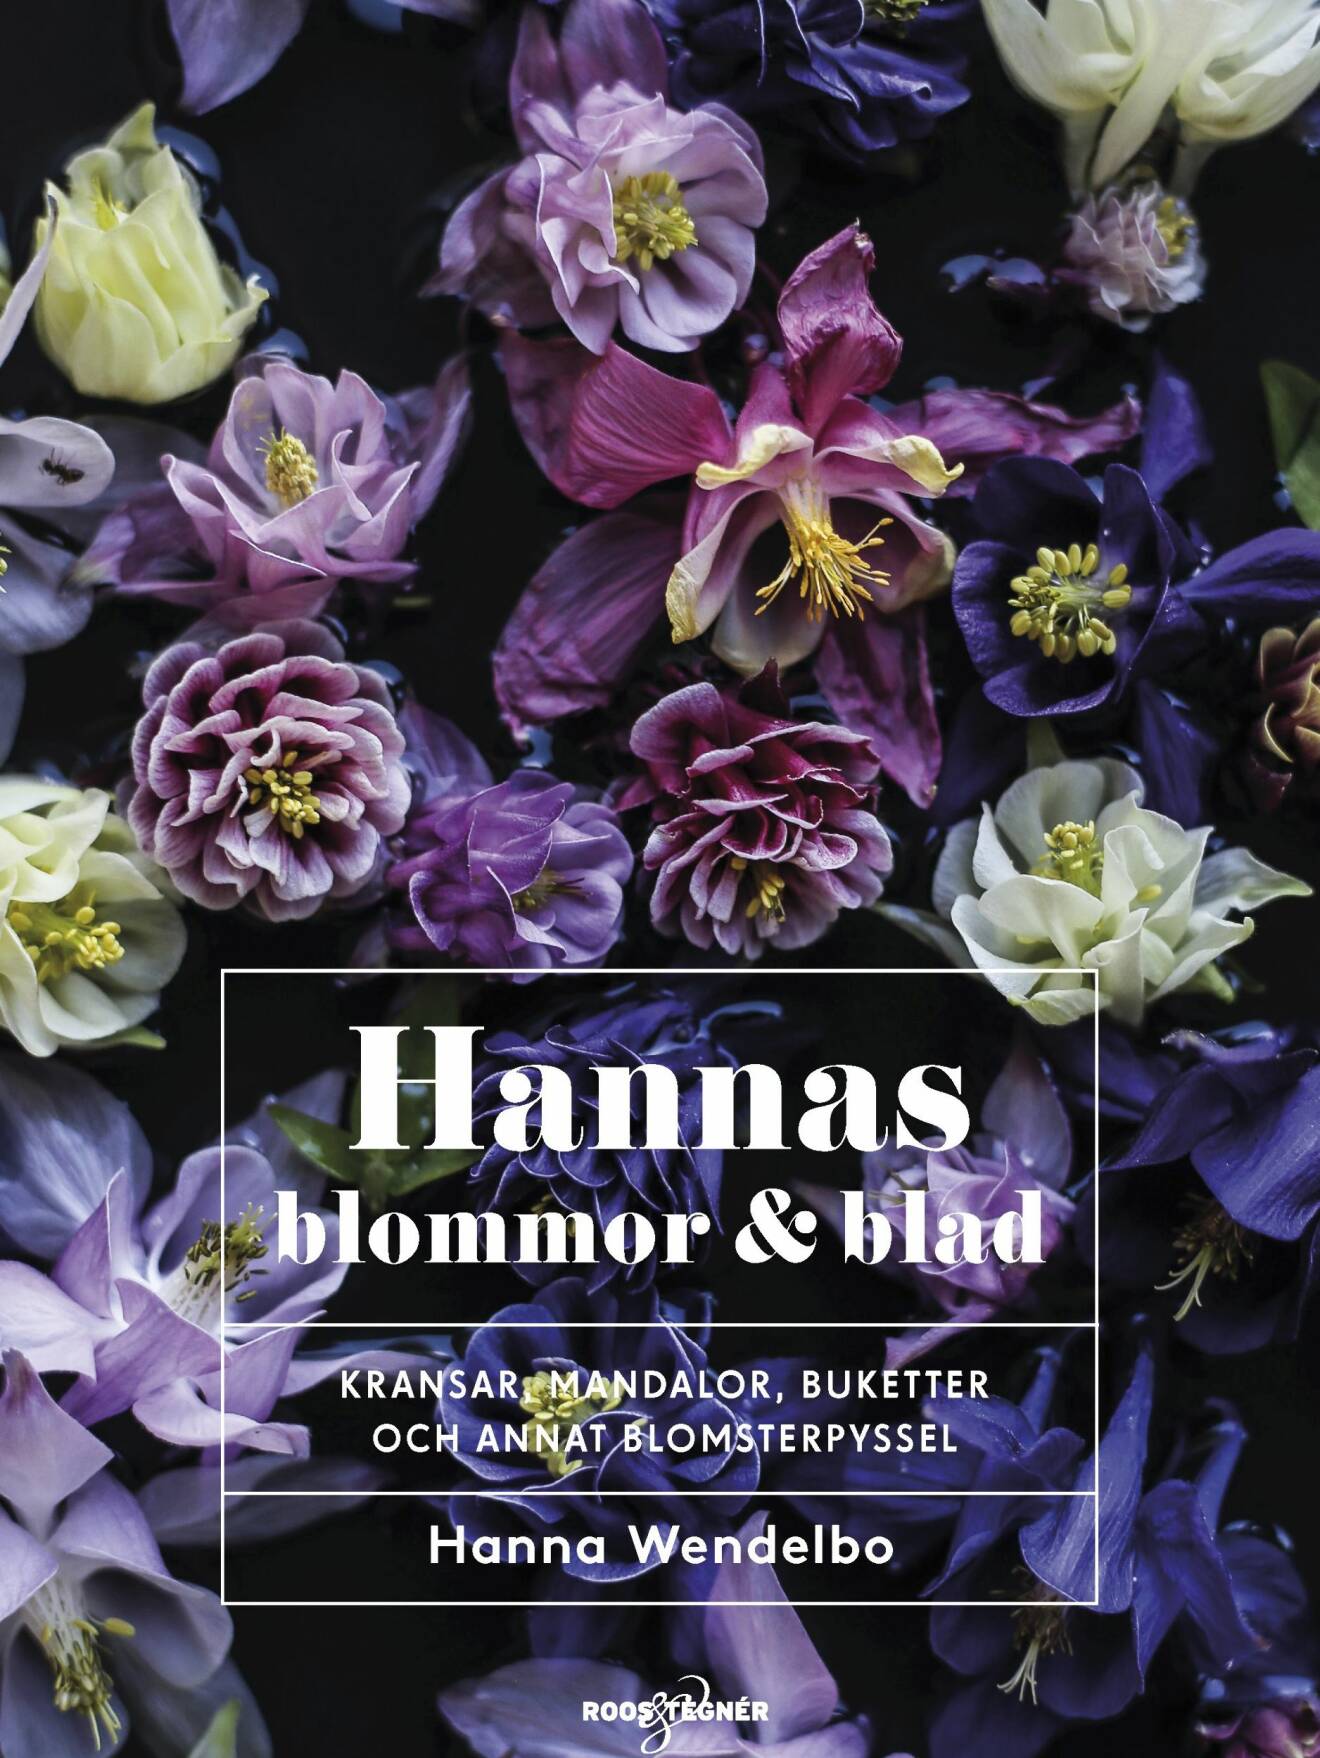 Hanna Wendelbo bok blommor och blad